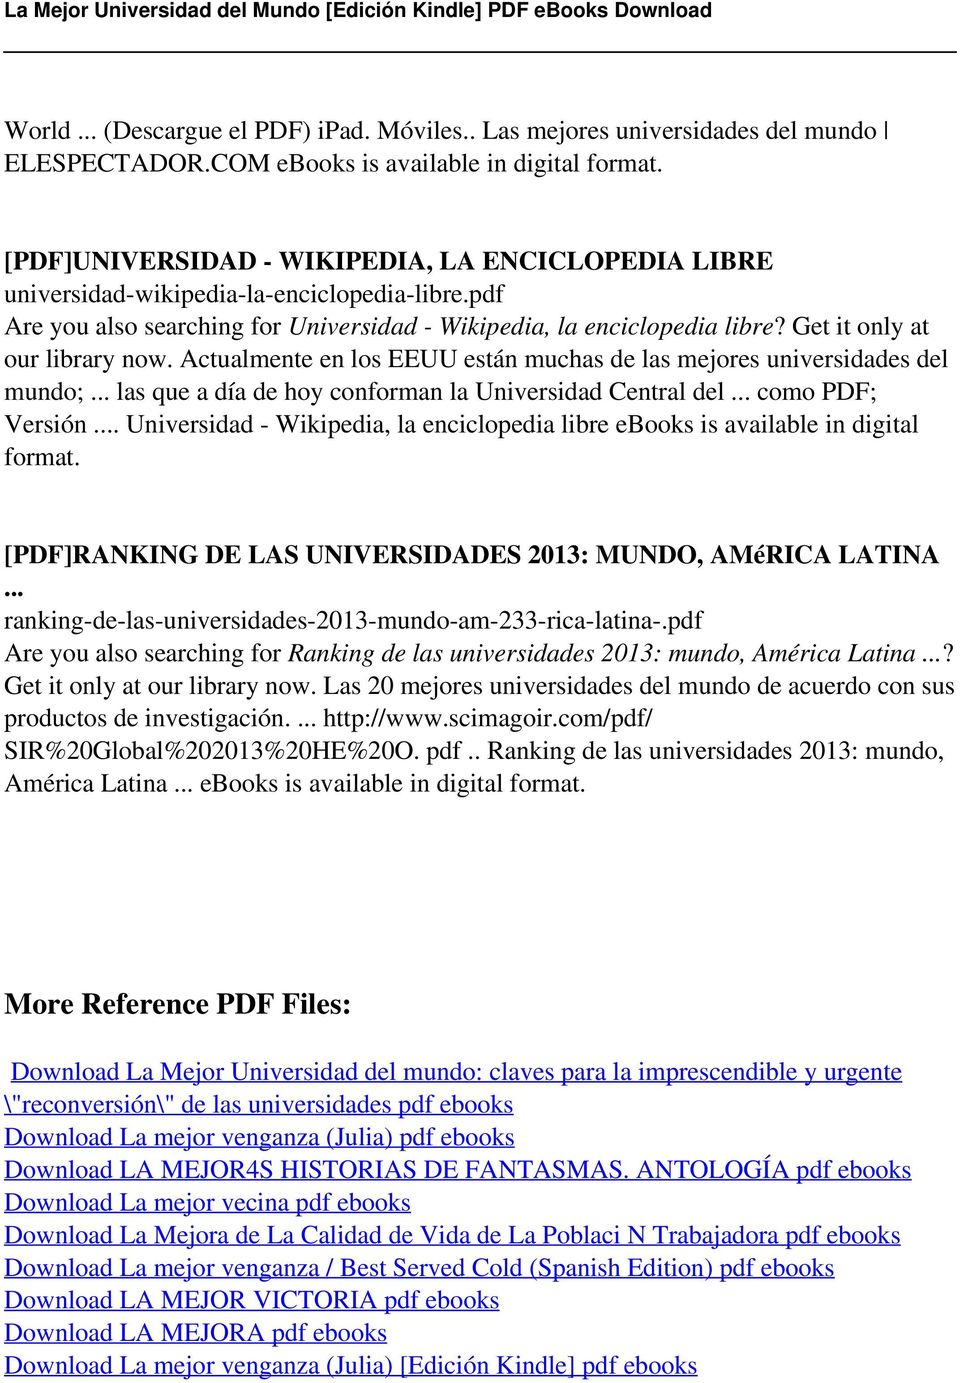 La Mejor Universidad Del Mundo Edicion Kindle Pdf Free Download